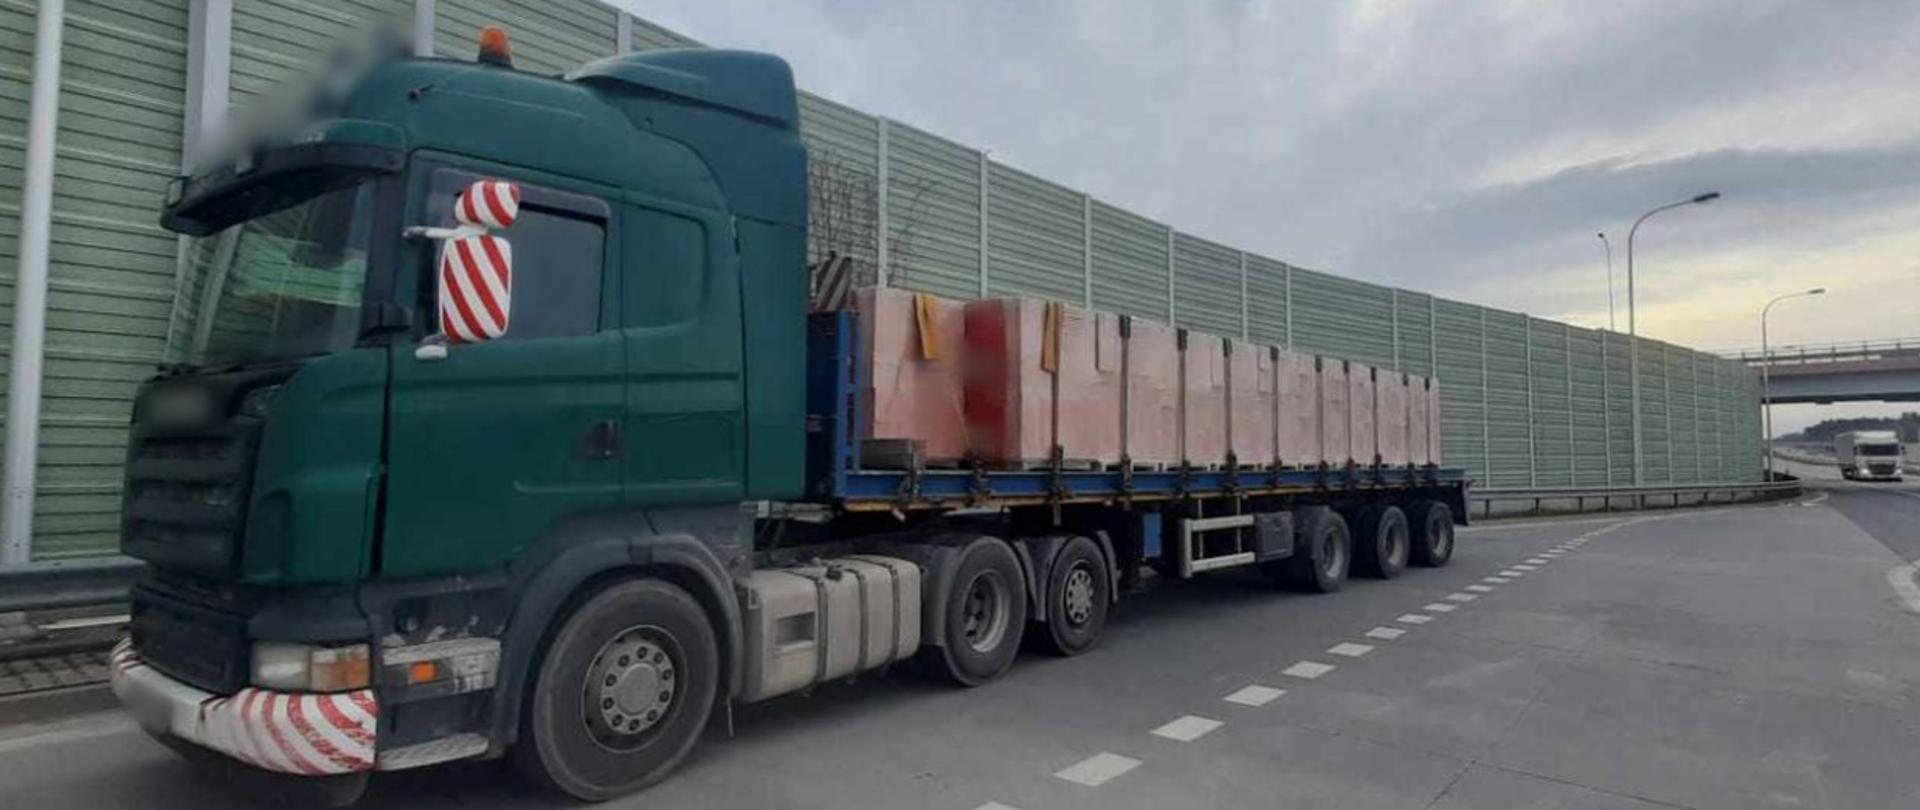 Zestaw ciężarowy z ładunkiem pustaków ceramicznych ważył 47 t zamiast dopuszczalnych 40 t. Został zatrzymany do kontroli przez patrol mazowieckiej Inspekcji Transportu Drogowego na ekspresowej „siódemce” w pobliżu Szydłowca.